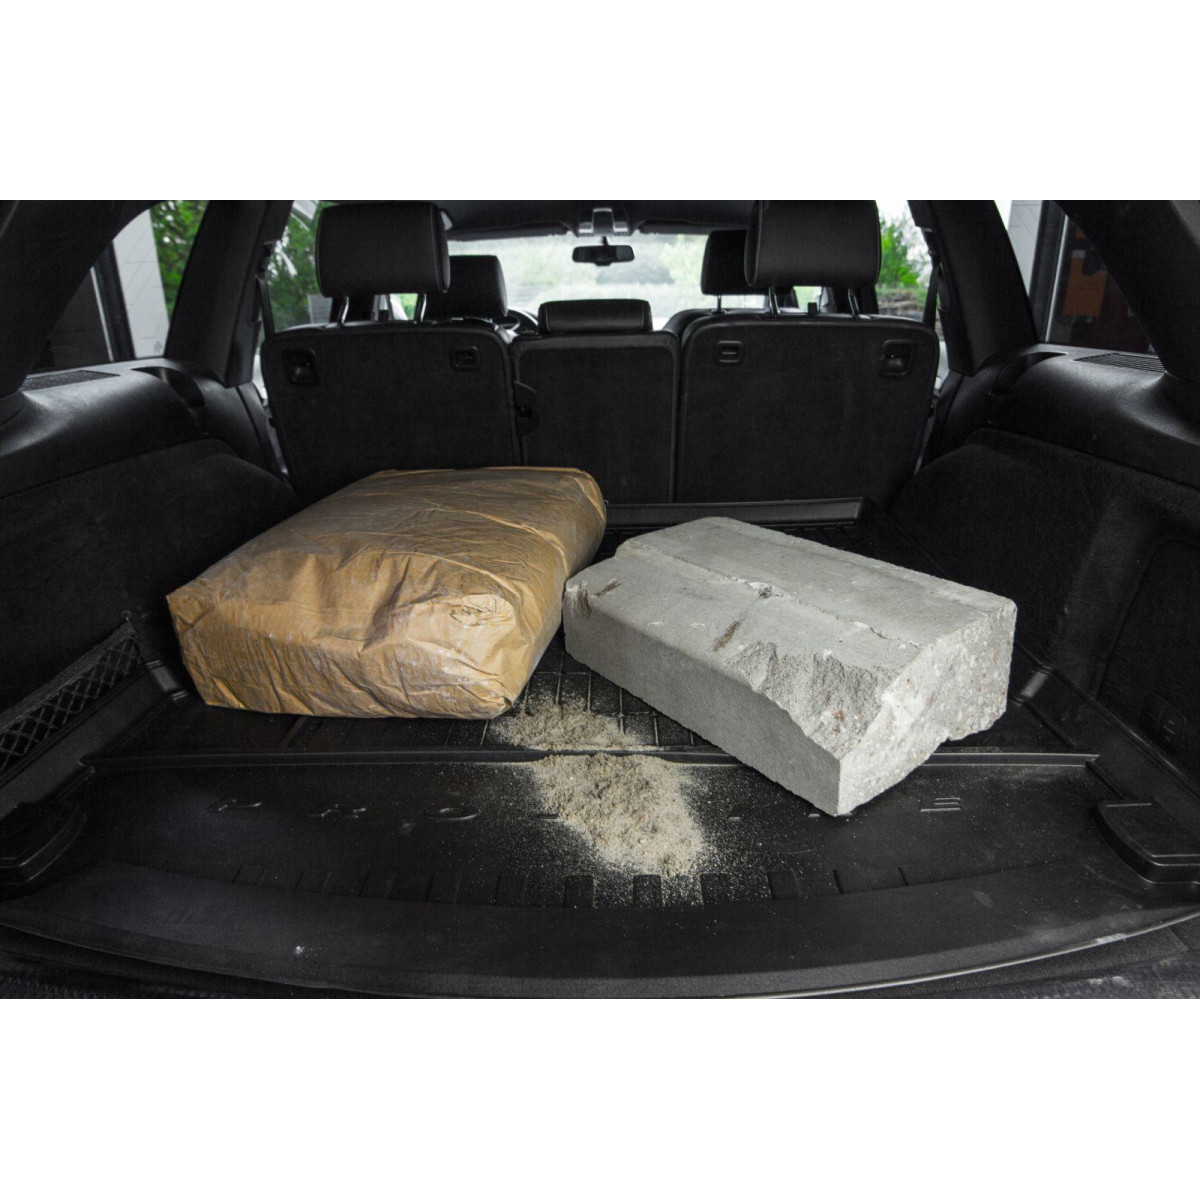 Guminis bagažinės kilimėlis Proline Ford Galaxy 2006-2015m. / 7 vietų / paaukštintais kraštais